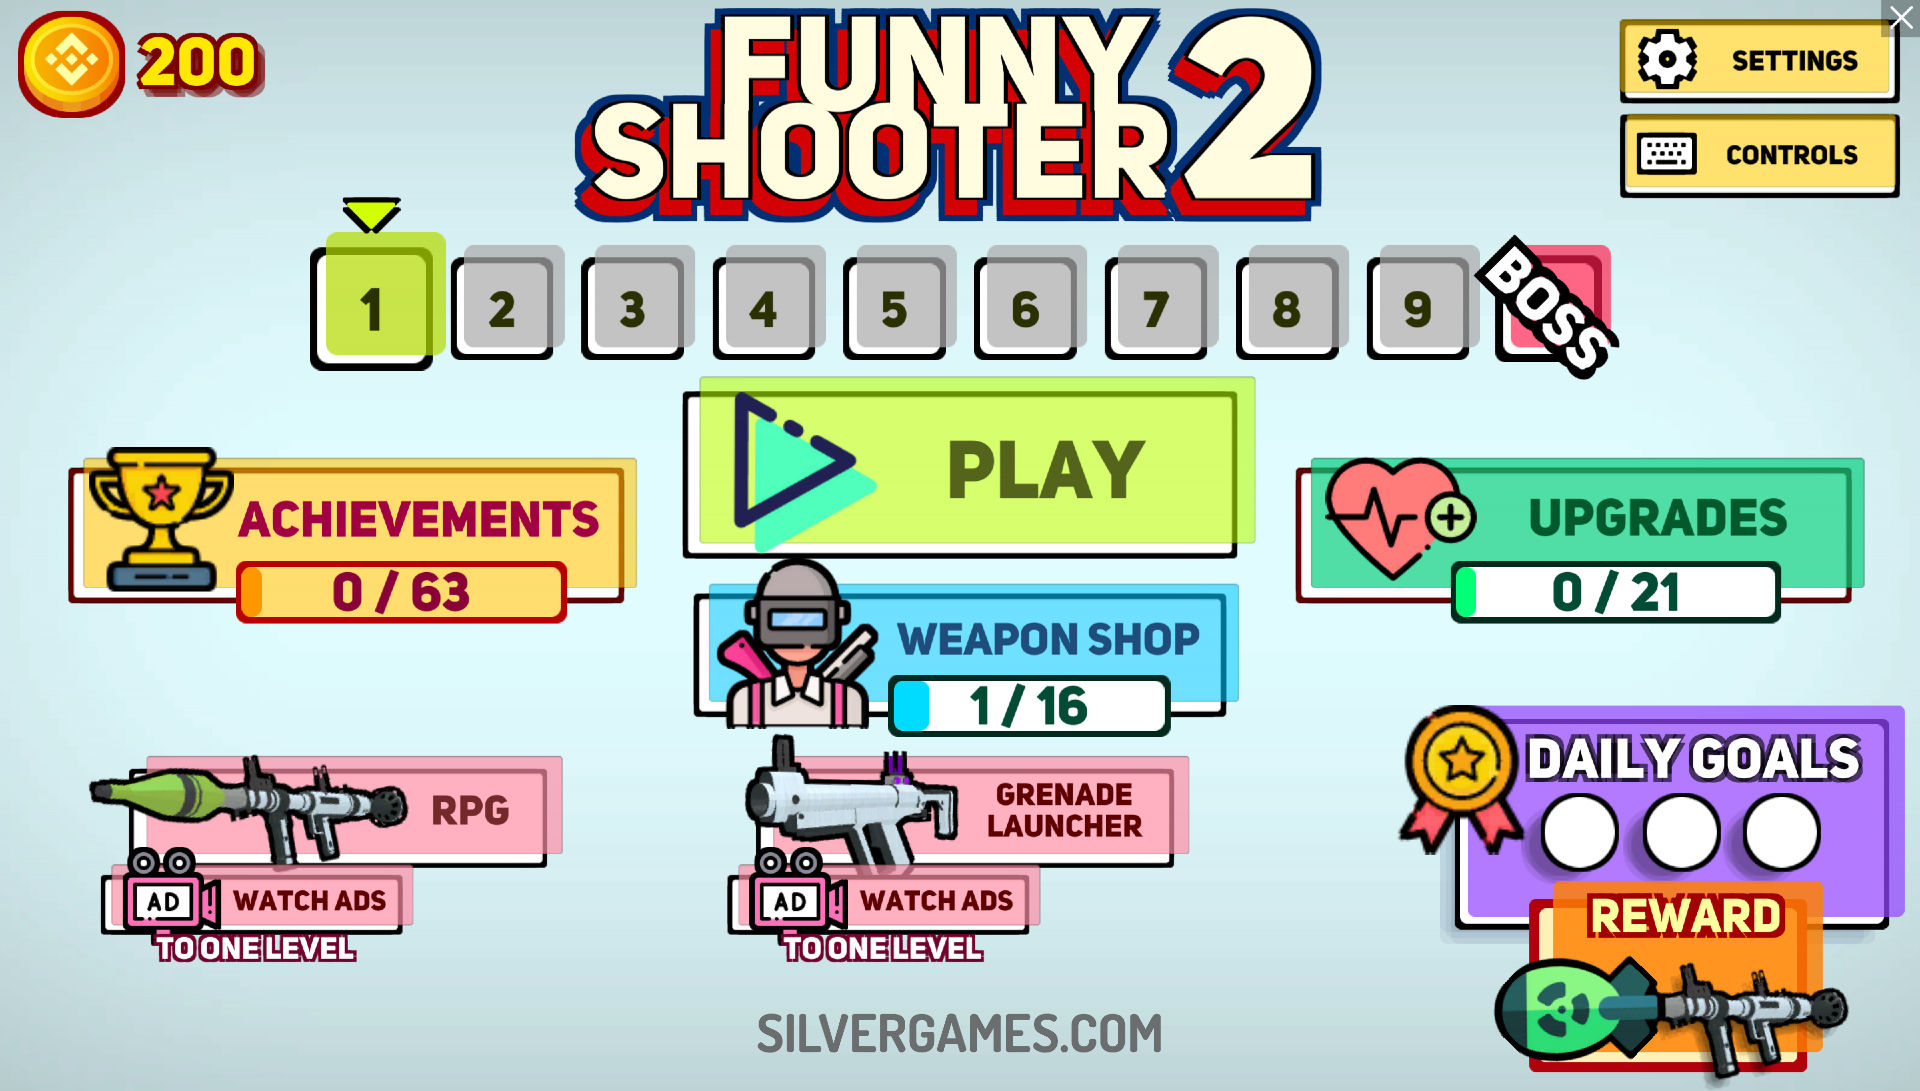 FUNNY SHOOTER 2 - Spela Funny Shooter 2 på Poki